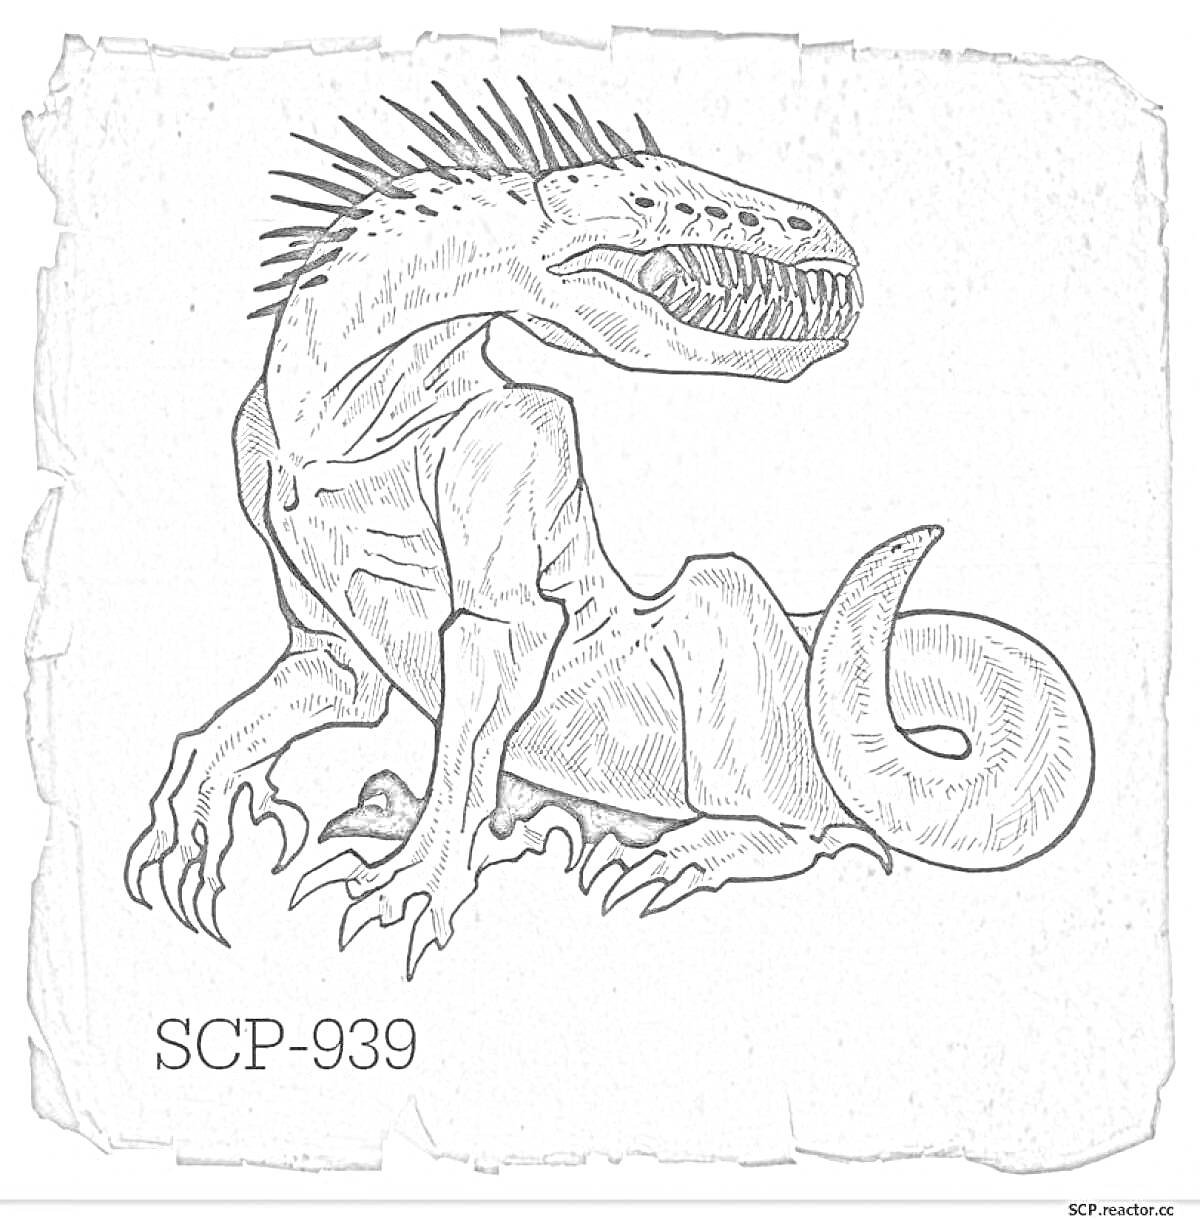 Раскраска SCP-939, хищное существо с острыми зубами и шипами на позвоночнике, большие лапы с когтями прижаты к земле.